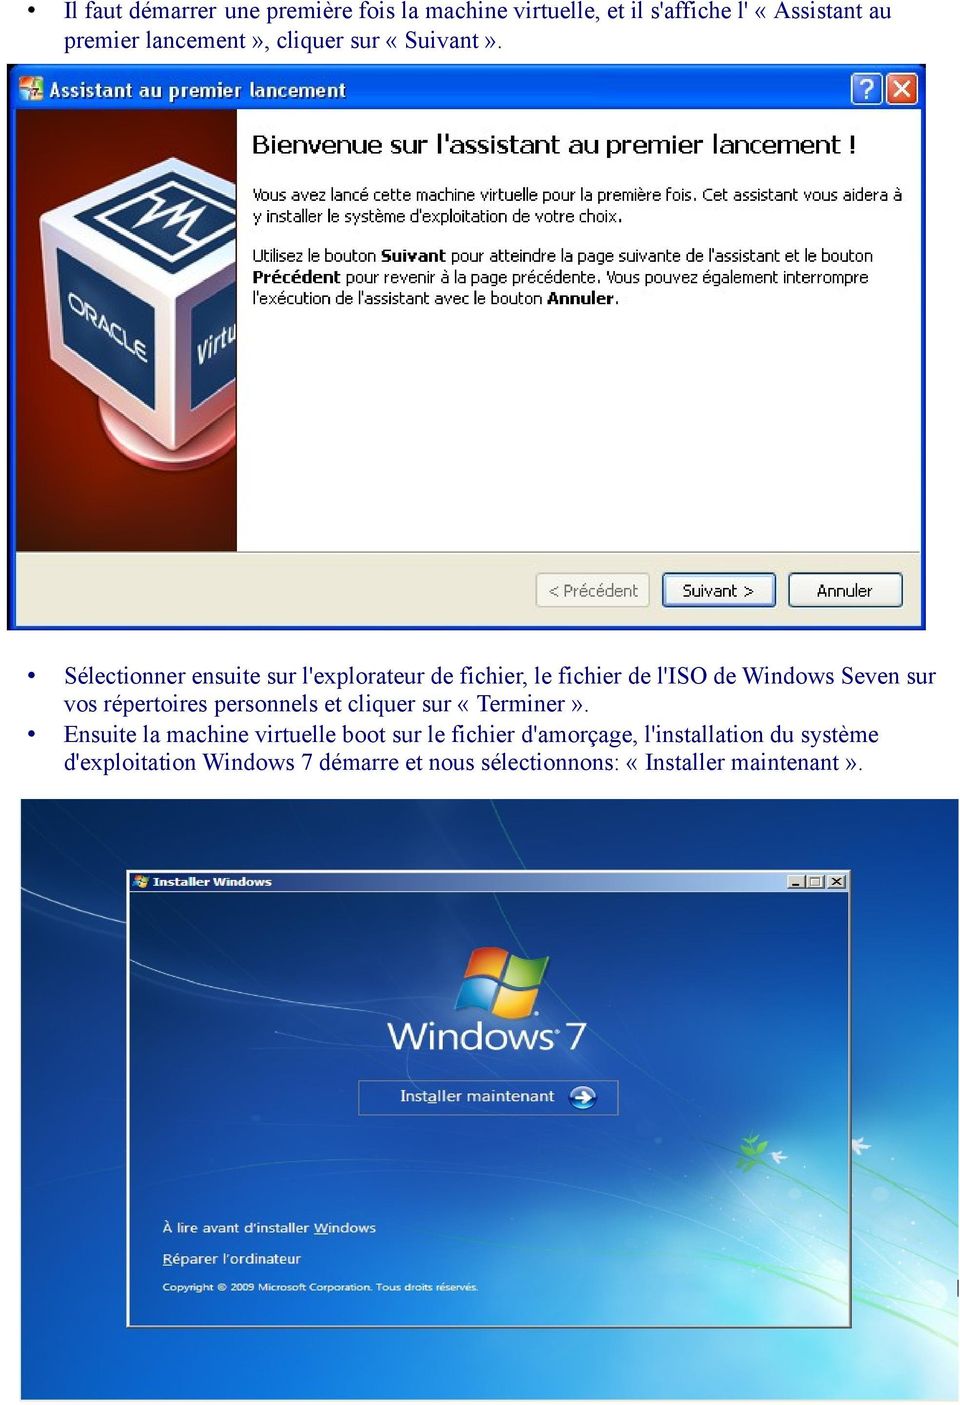 Sélectionner ensuite sur l'explorateur de fichier, le fichier de l'iso de Windows Seven sur vos répertoires